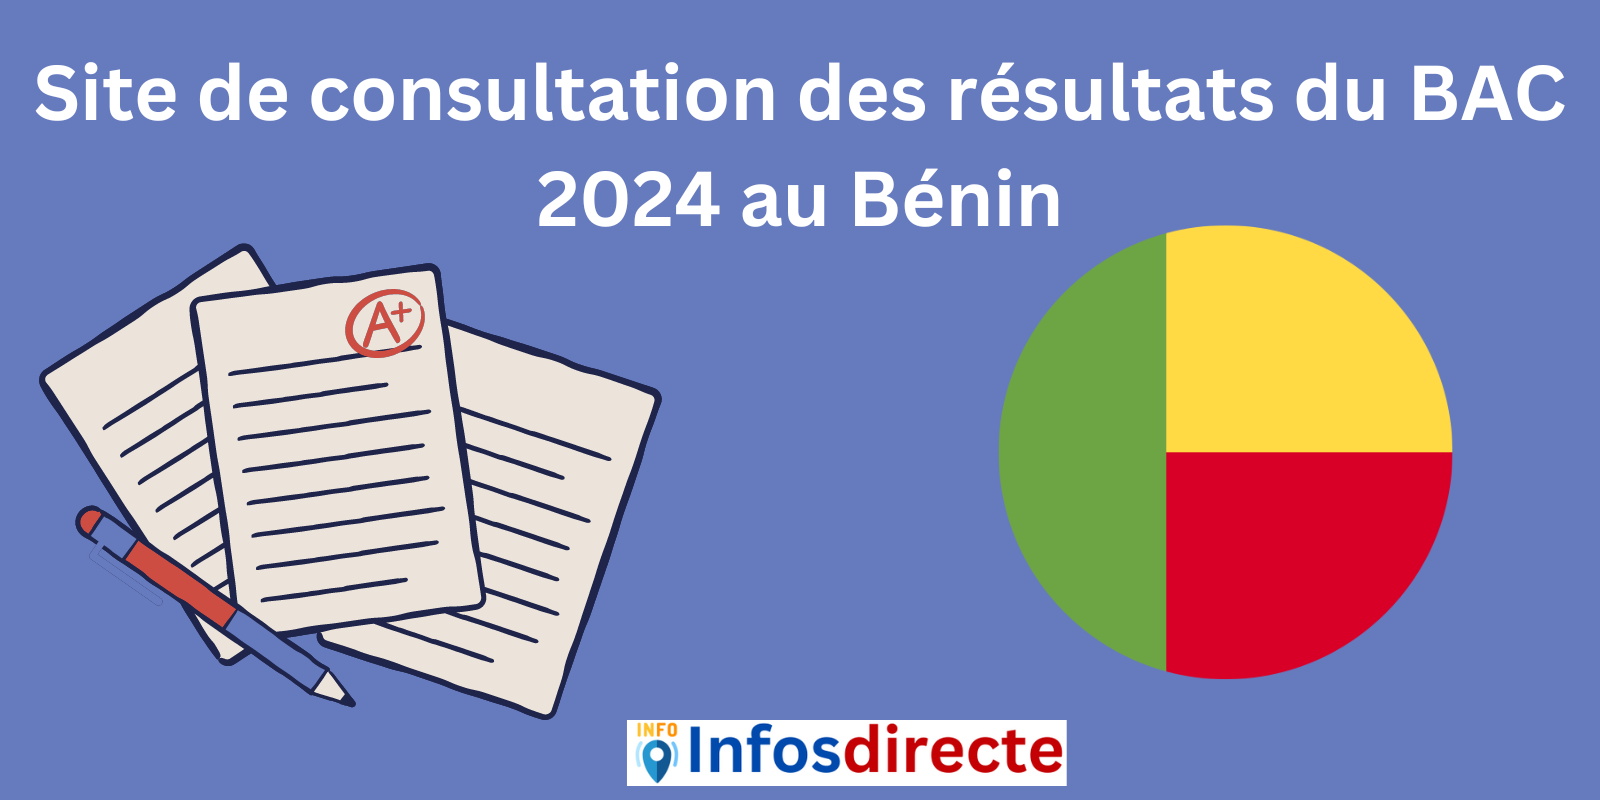 Site de consultation des résultats du BAC 2024 au Bénin